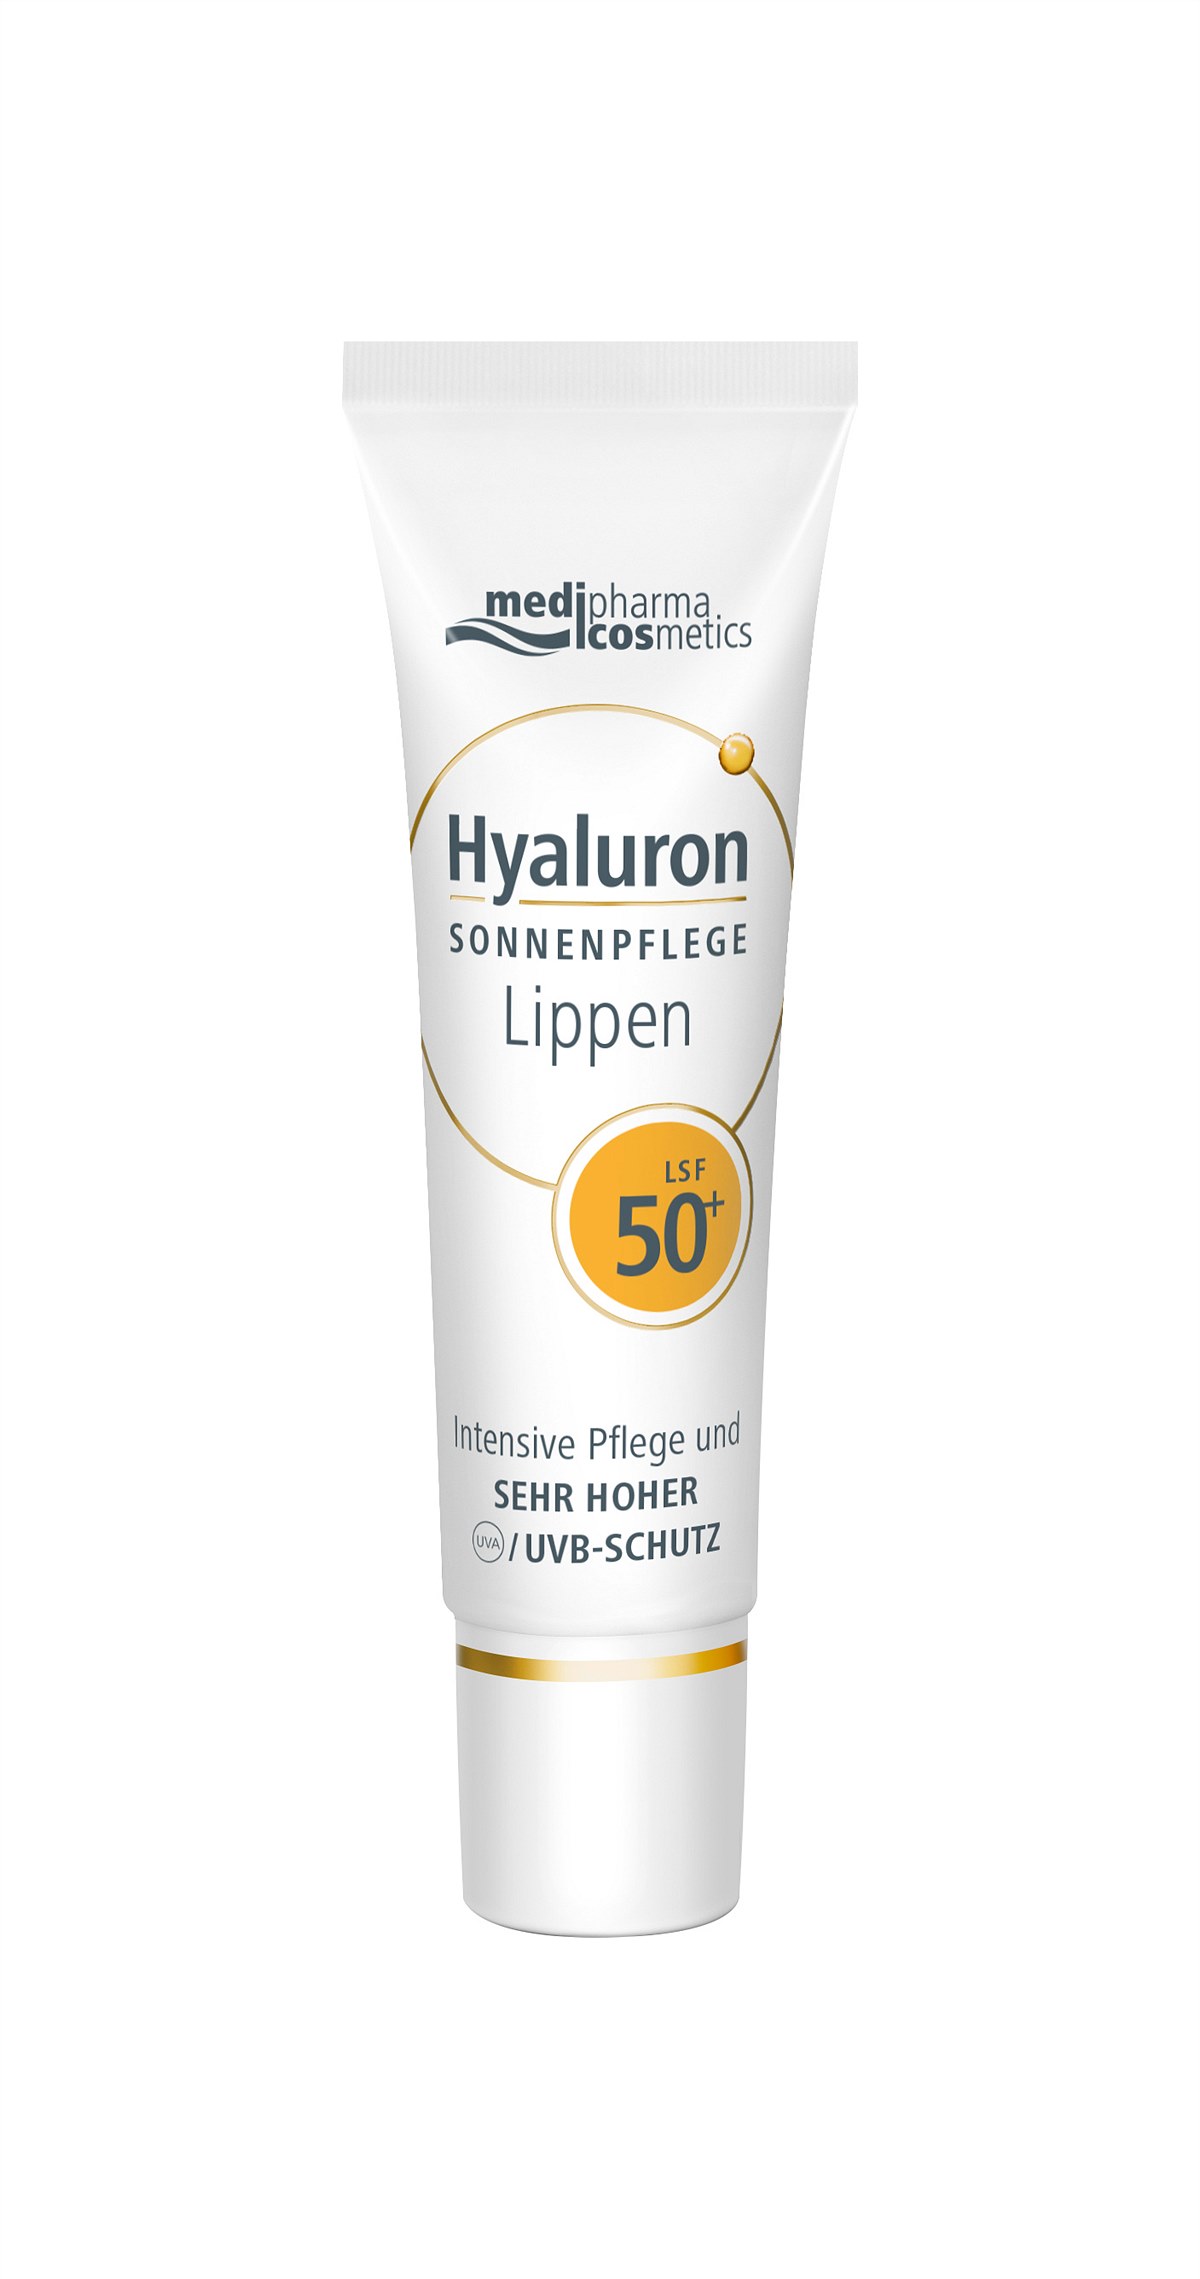 medipharma cosmetics - Hyaluron SONNENPFLEGE Lippen LSF 50+